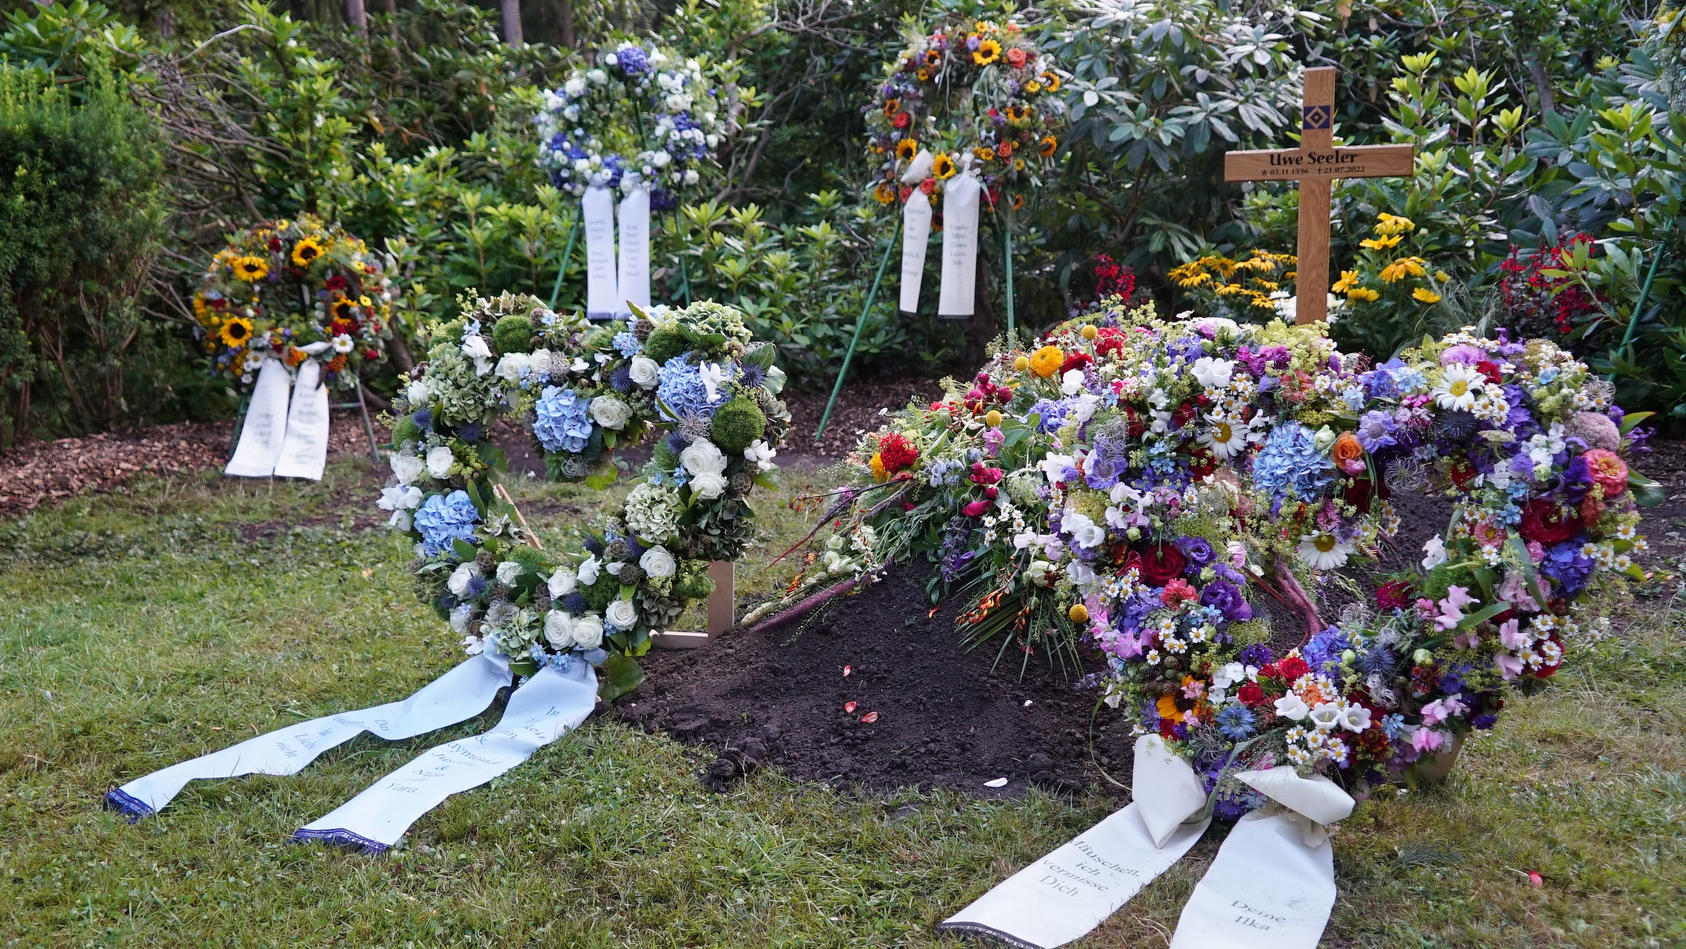 am-donnerstag-wurde-hsv-ikone-uwe-seeler-im-engsten-familienkreis-beigesetzt